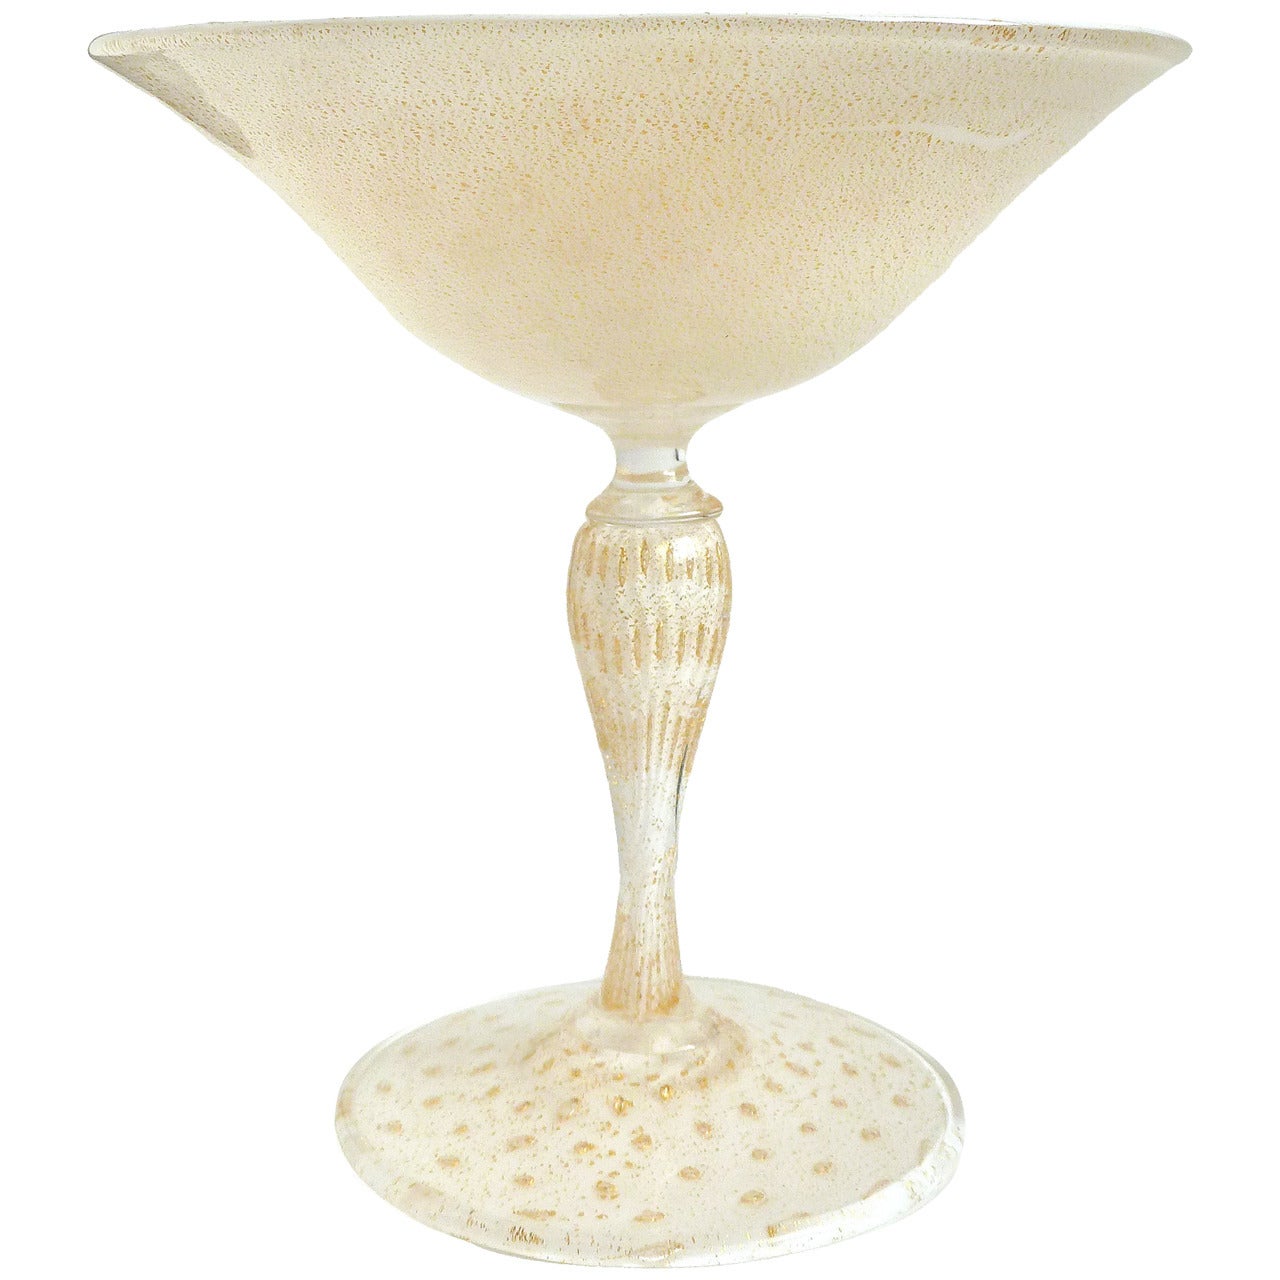 Alfredo Barbini Murano Gold Flecks White Italian Art Glass Compote Candy Bowl